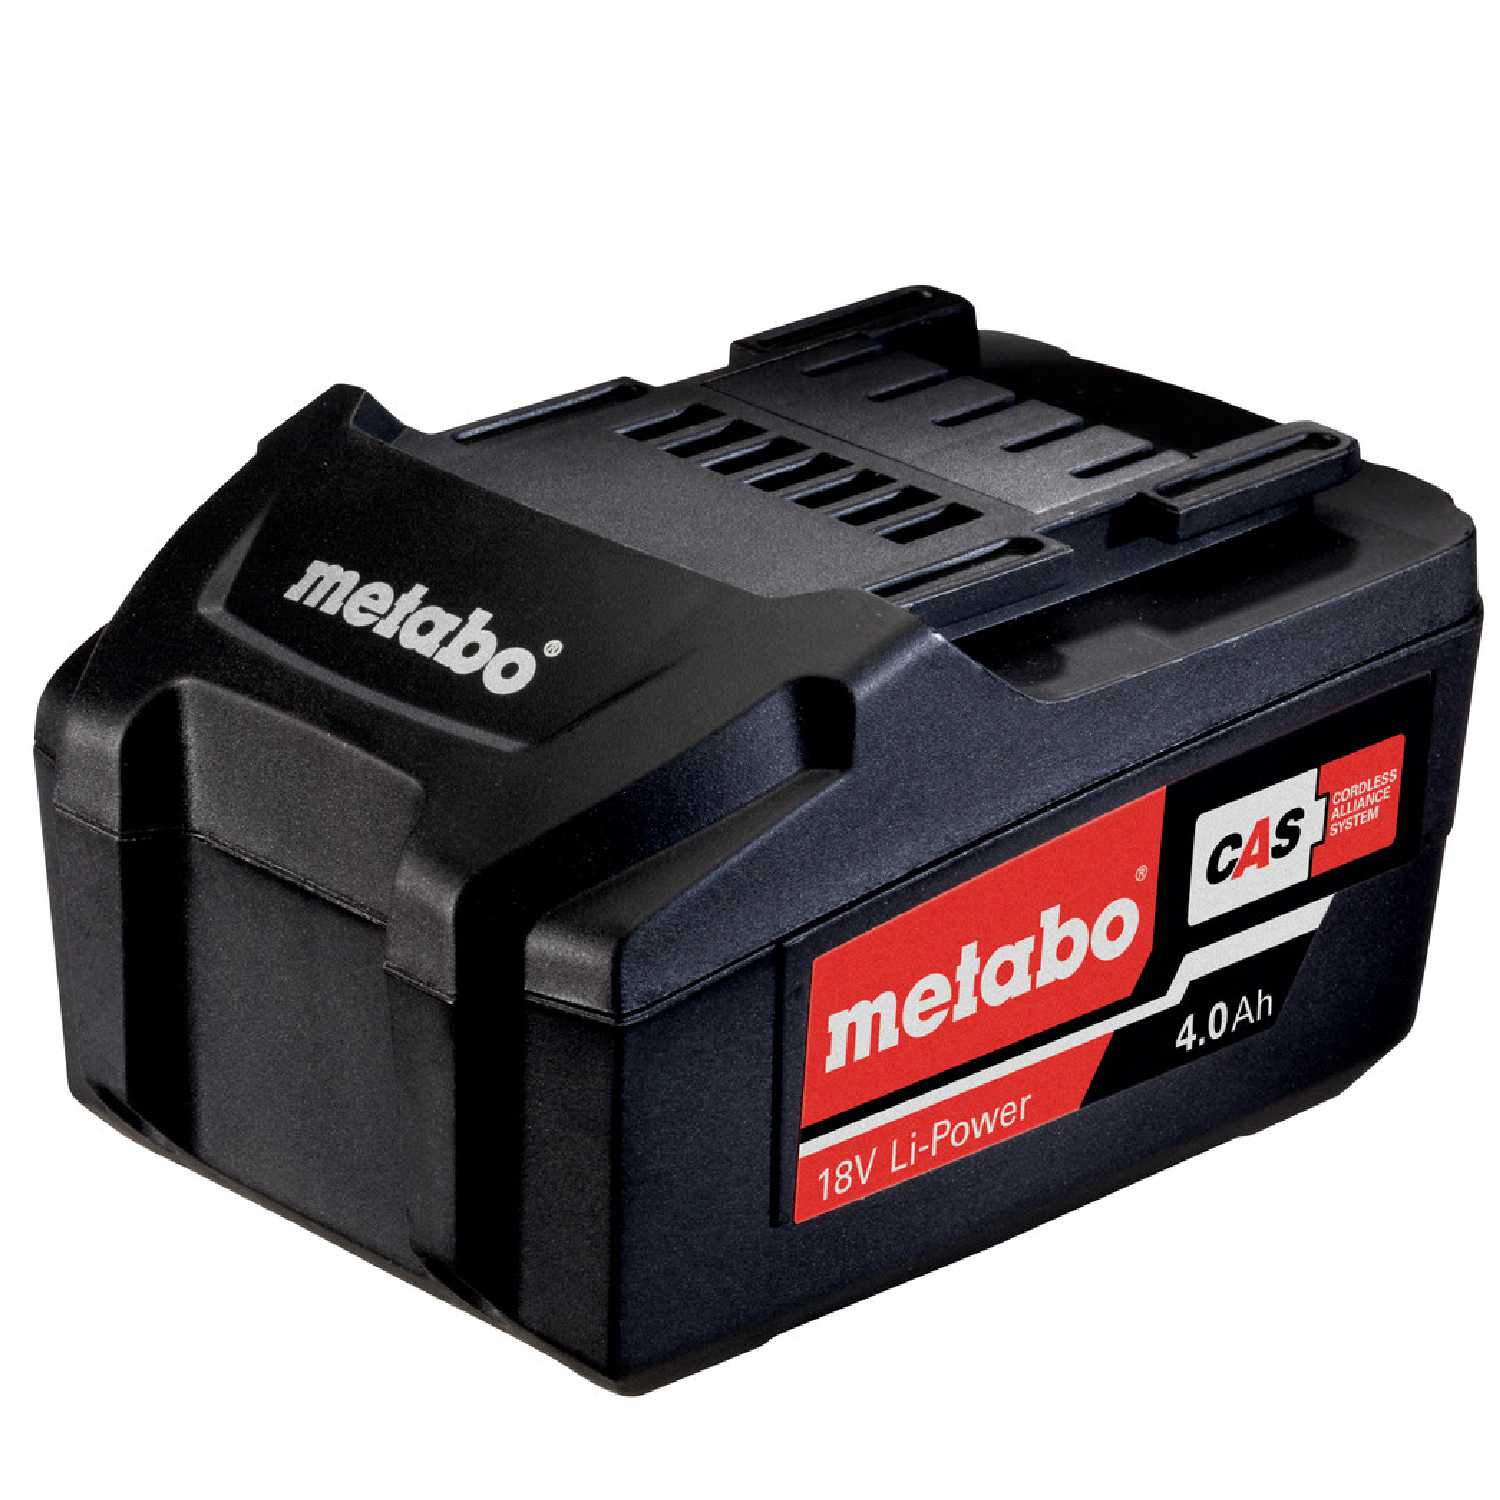 Metabo 625591000 Akkupack 18 V, 4,0 Ah, Li-Power, AIR COOLED